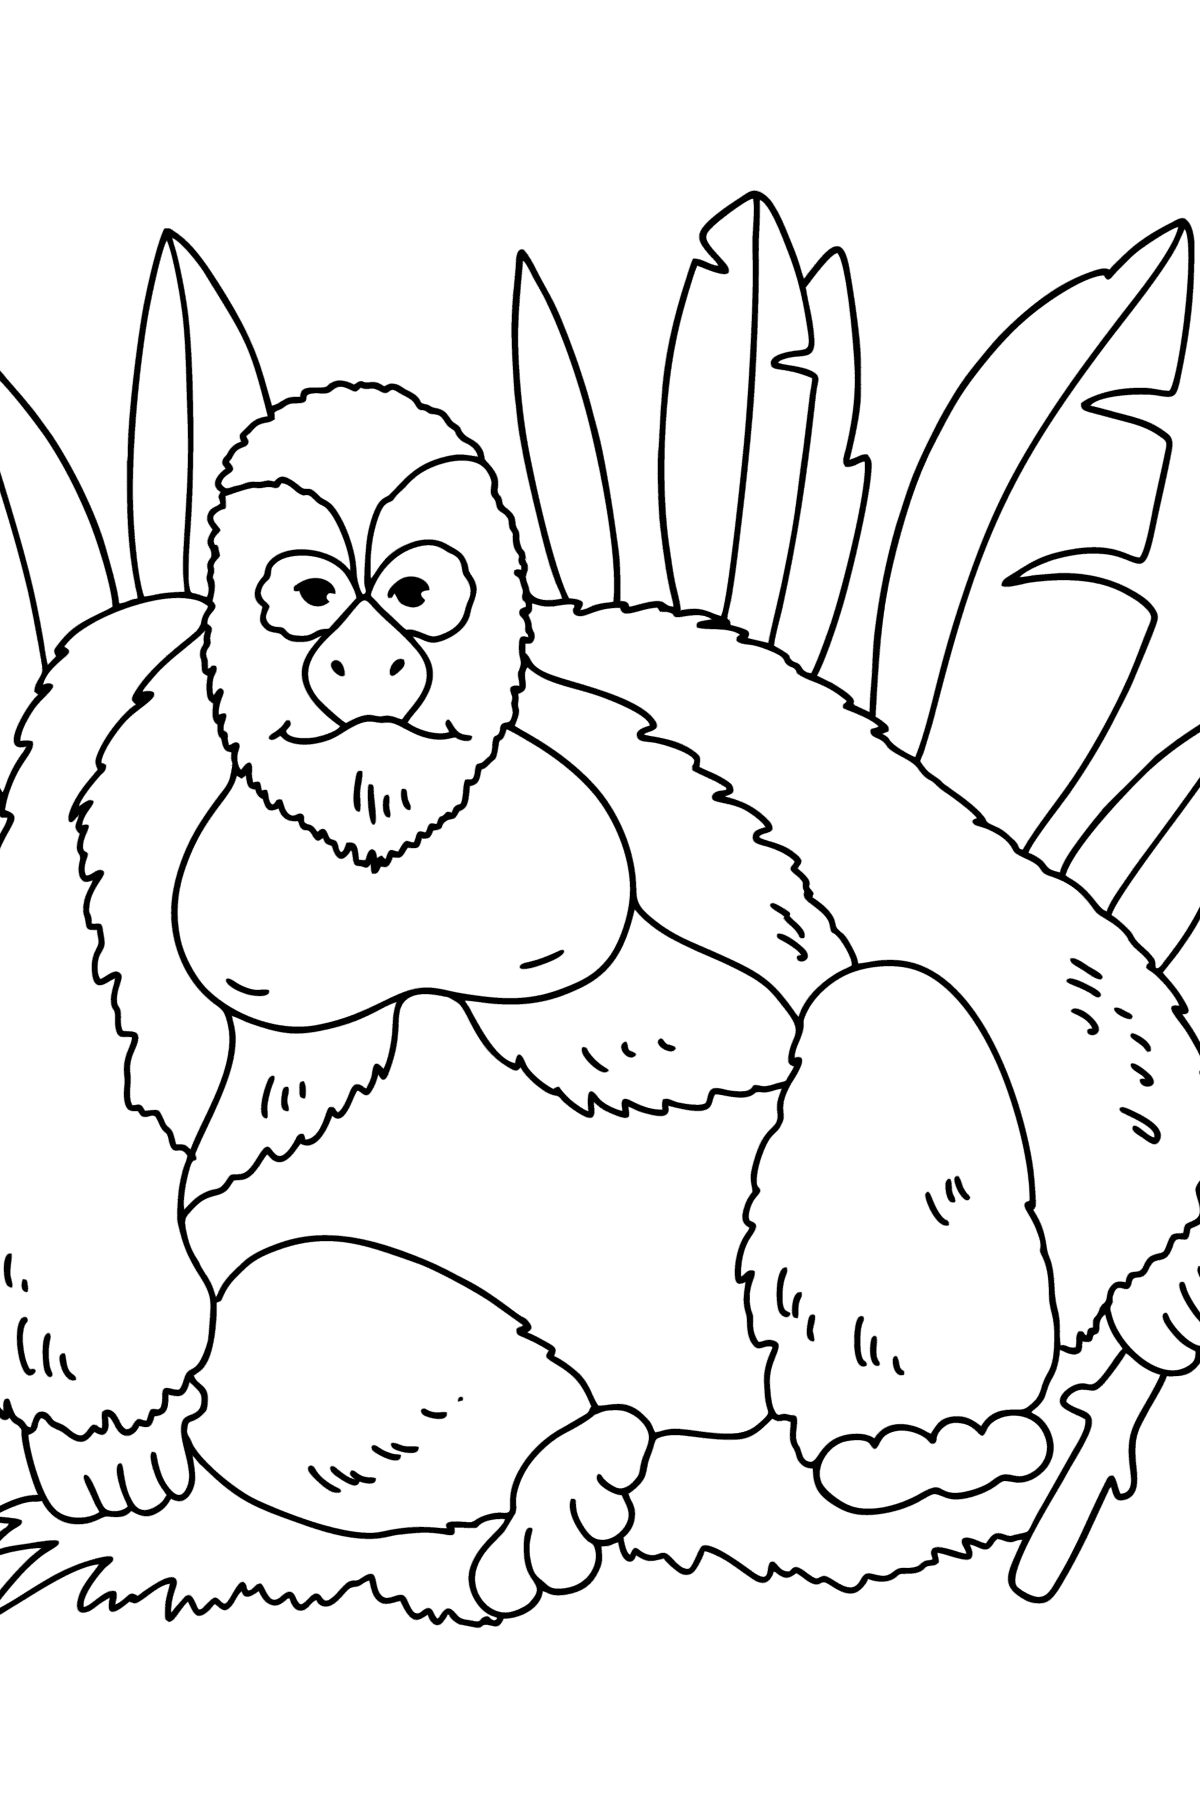 Boyama sayfası Goril - Boyamalar çocuklar için